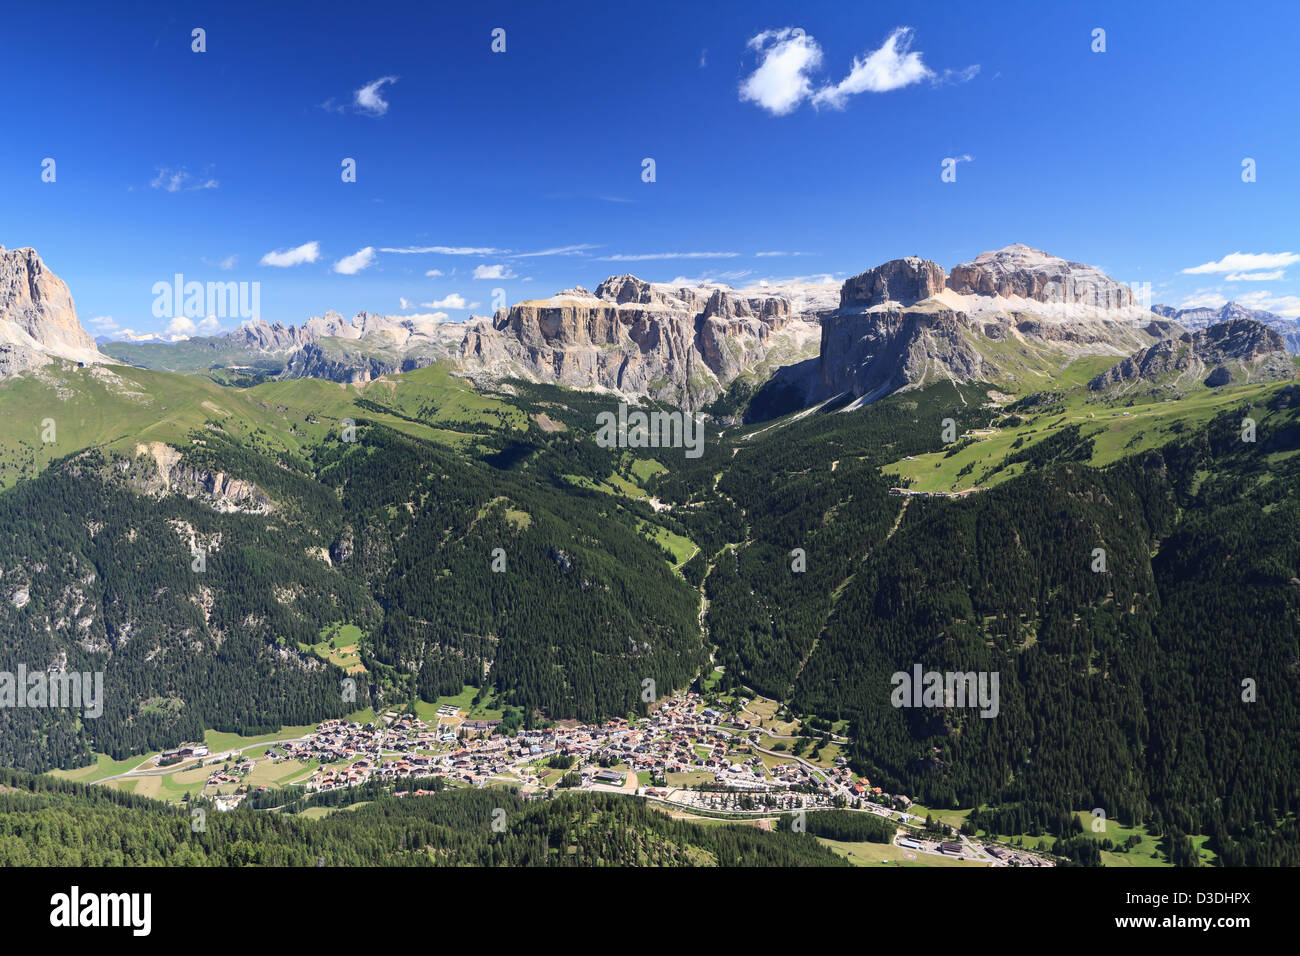 Aerial view of Canazei and Fassa valley with Saas Pordoi mount, Sella and Pordoi pass and Sassolungo mount Stock Photo